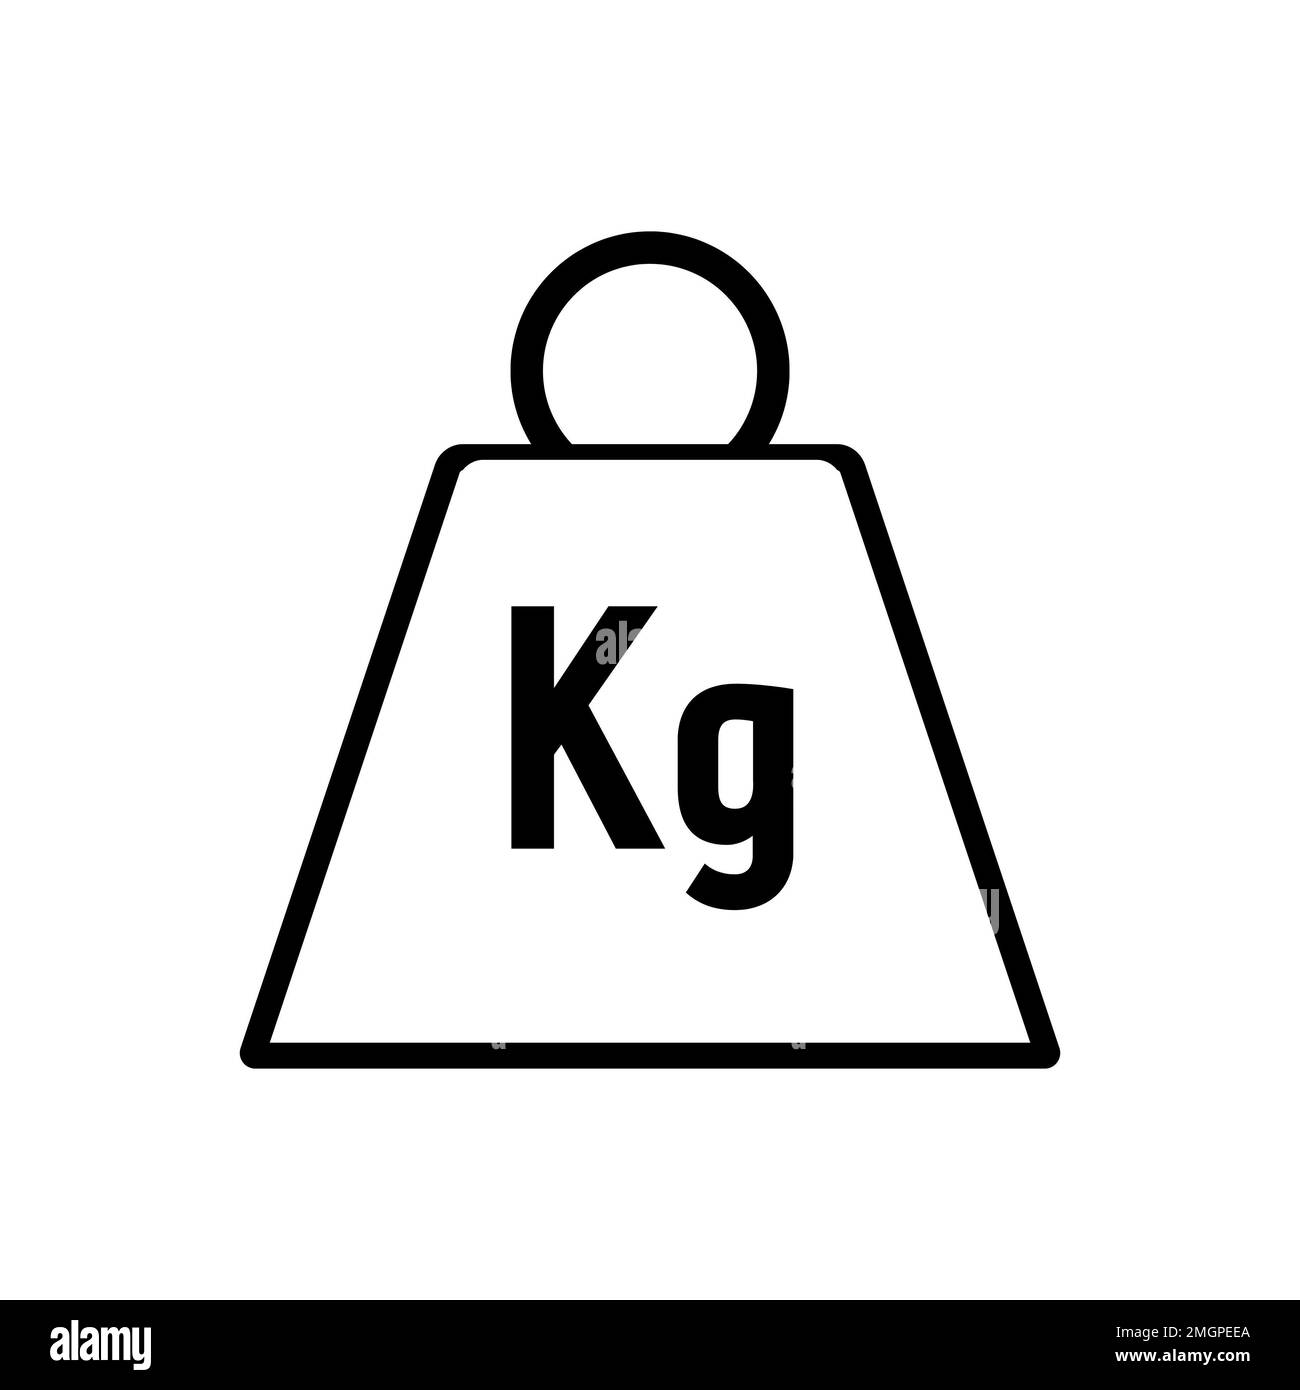 Immagine di un'icona di peso di kg in scala di grigi Foto stock - Alamy